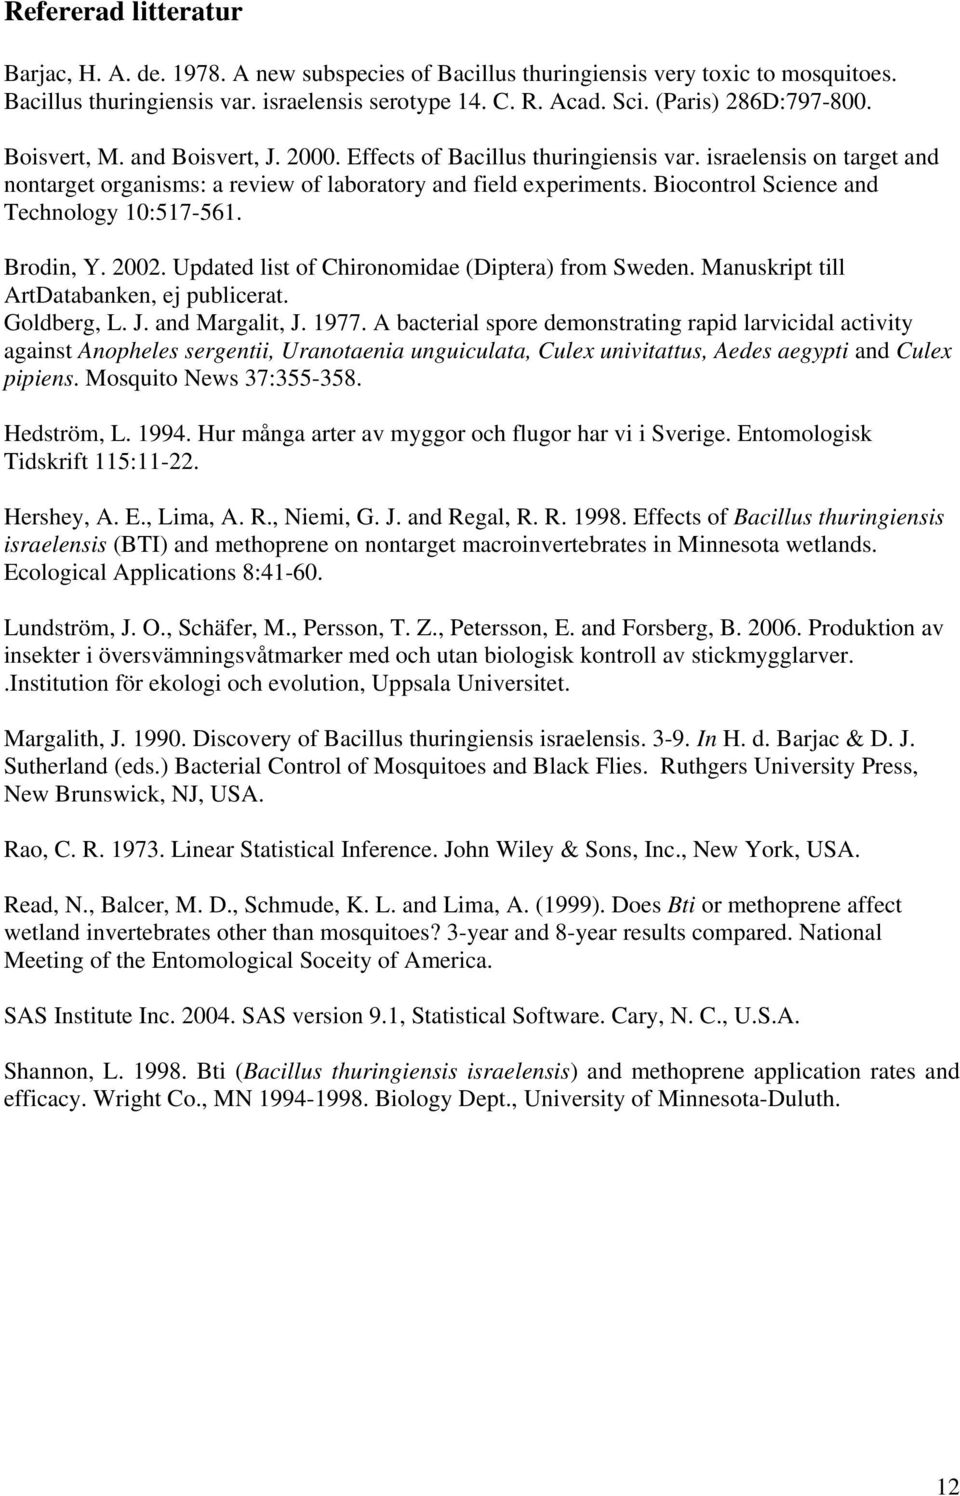 Biocontrol Science and Technology 10:517-561. Brodin, Y. 2002. Updated list of Chironomidae (Diptera) from Sweden. Manuskript till ArtDatabanken, ej publicerat. Goldberg, L. J. and Margalit, J. 1977.